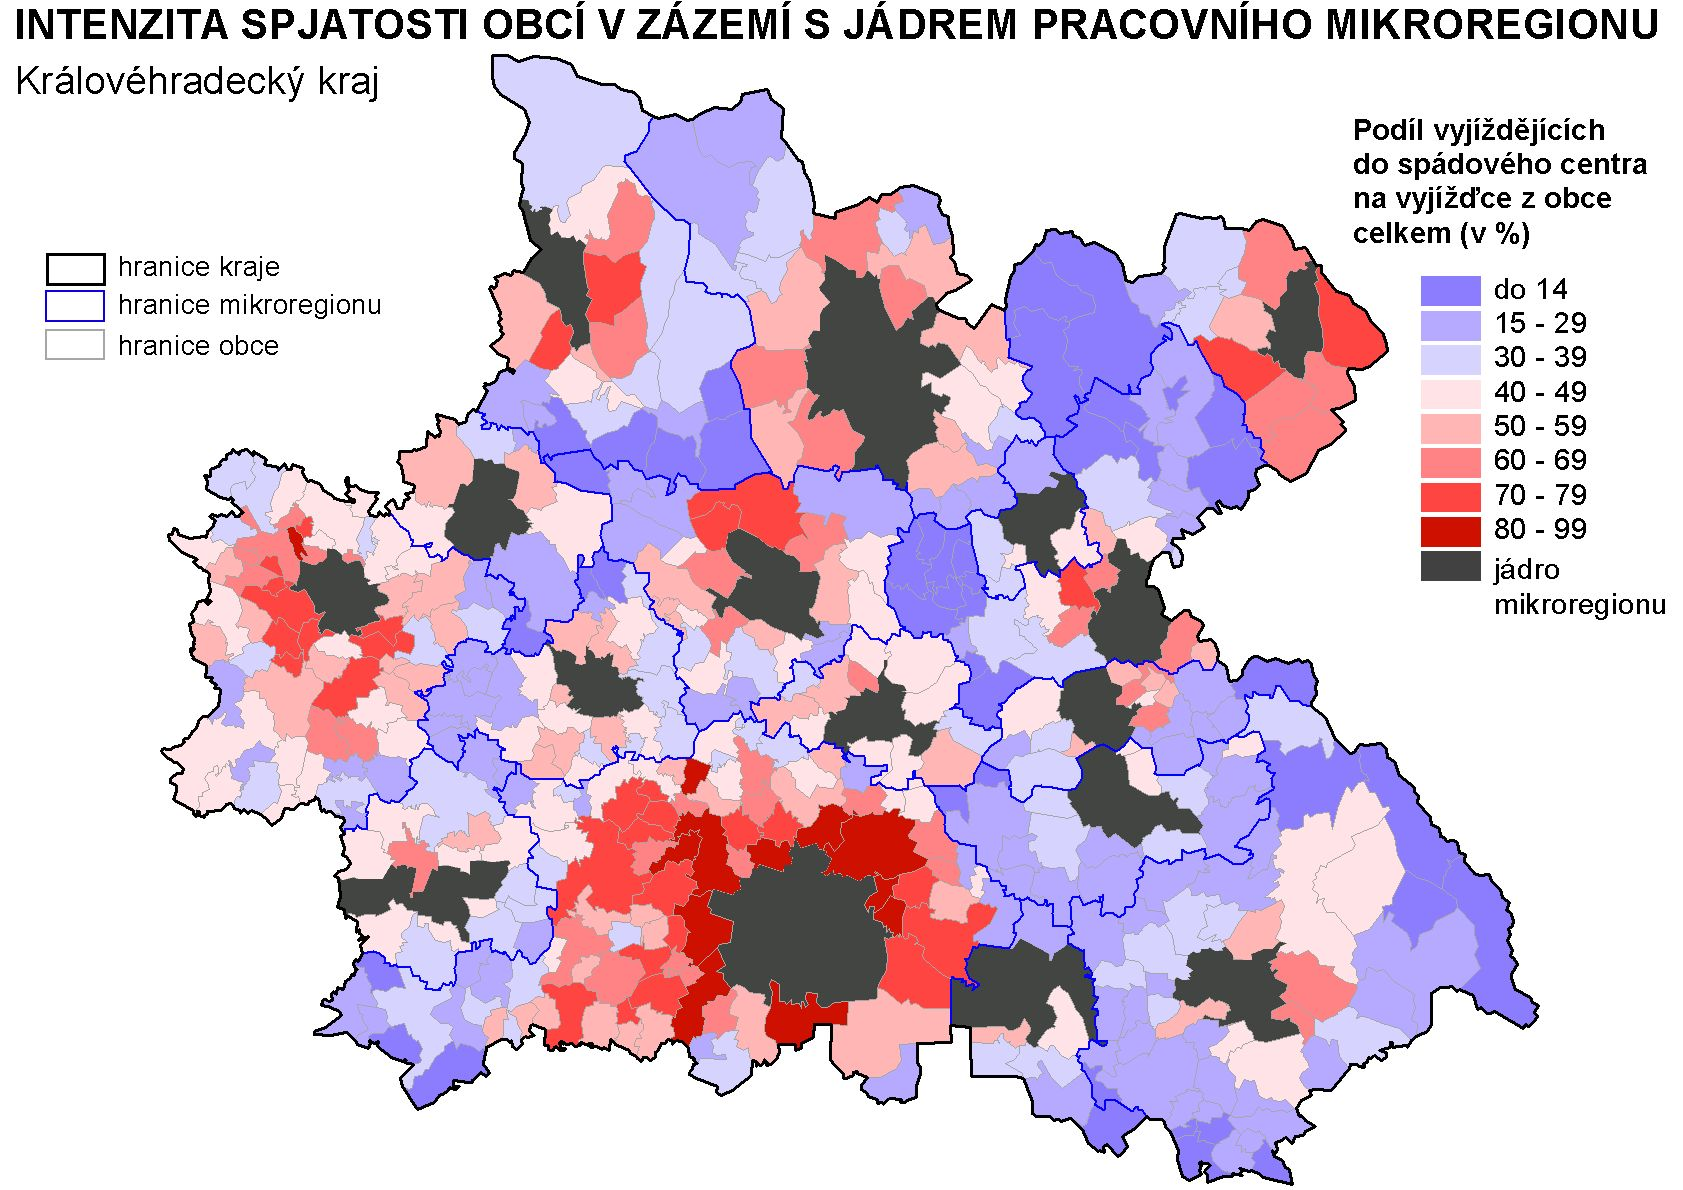 mikroregion Trutnov, Náchod a Rychnov nad Kněžnou.